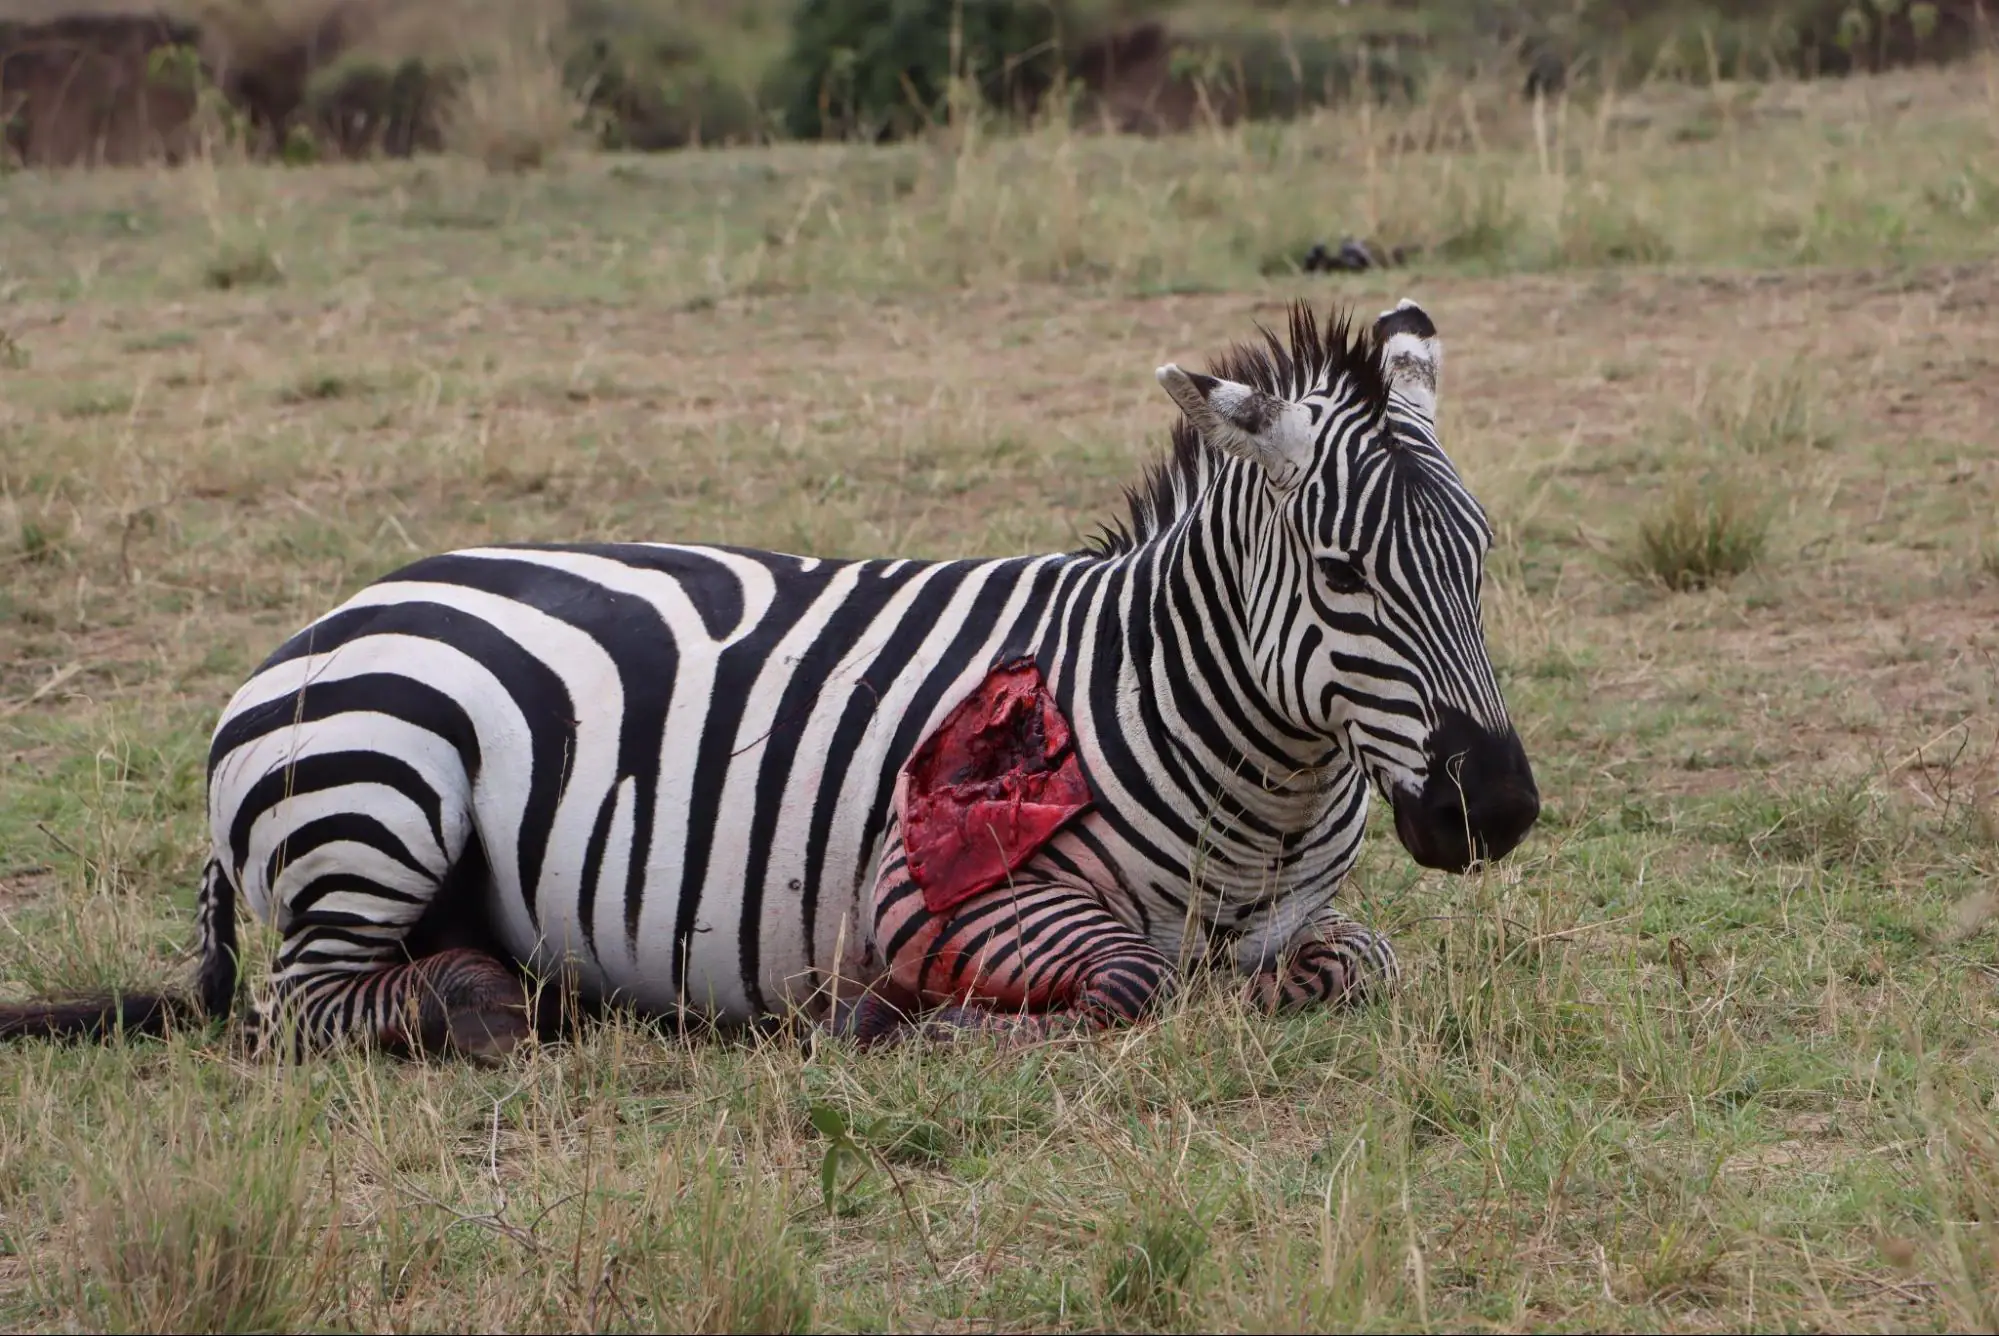 Injured Zebra in Aberdare National Park